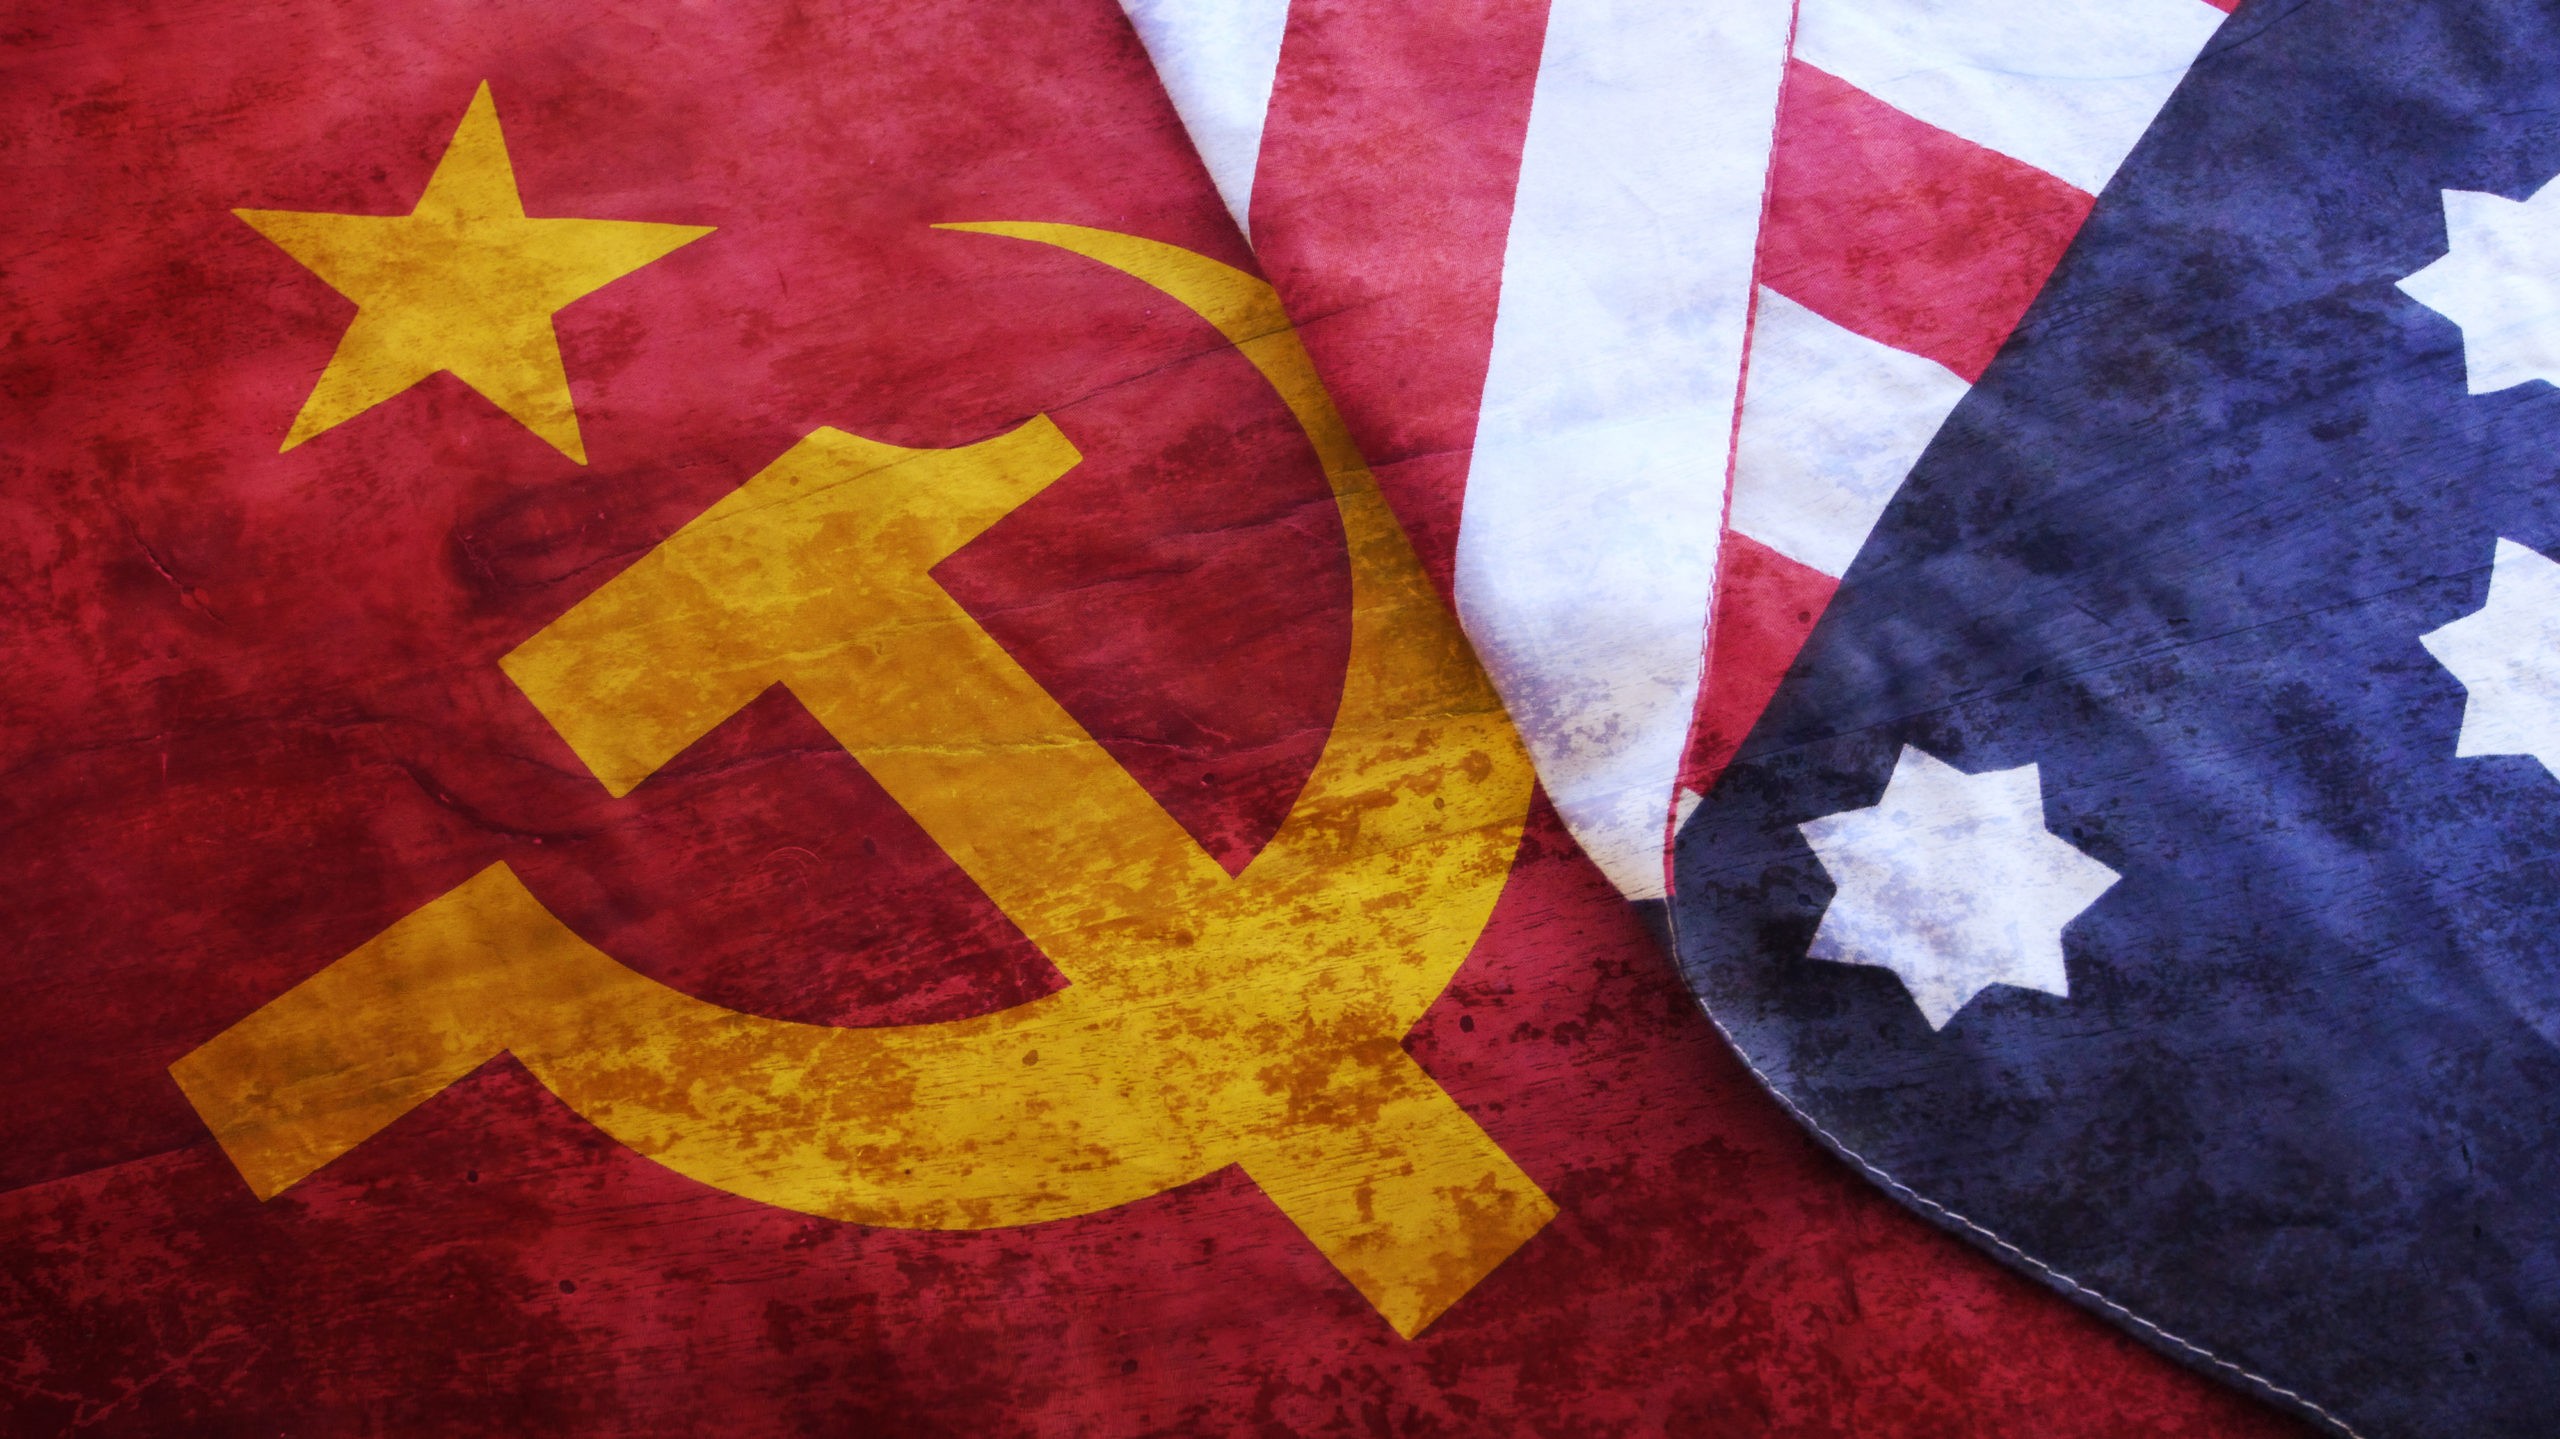 Cama: “Nuova Guerra Fredda? Su scontri USA/UE contro Cina e Russia troppa enfasi”